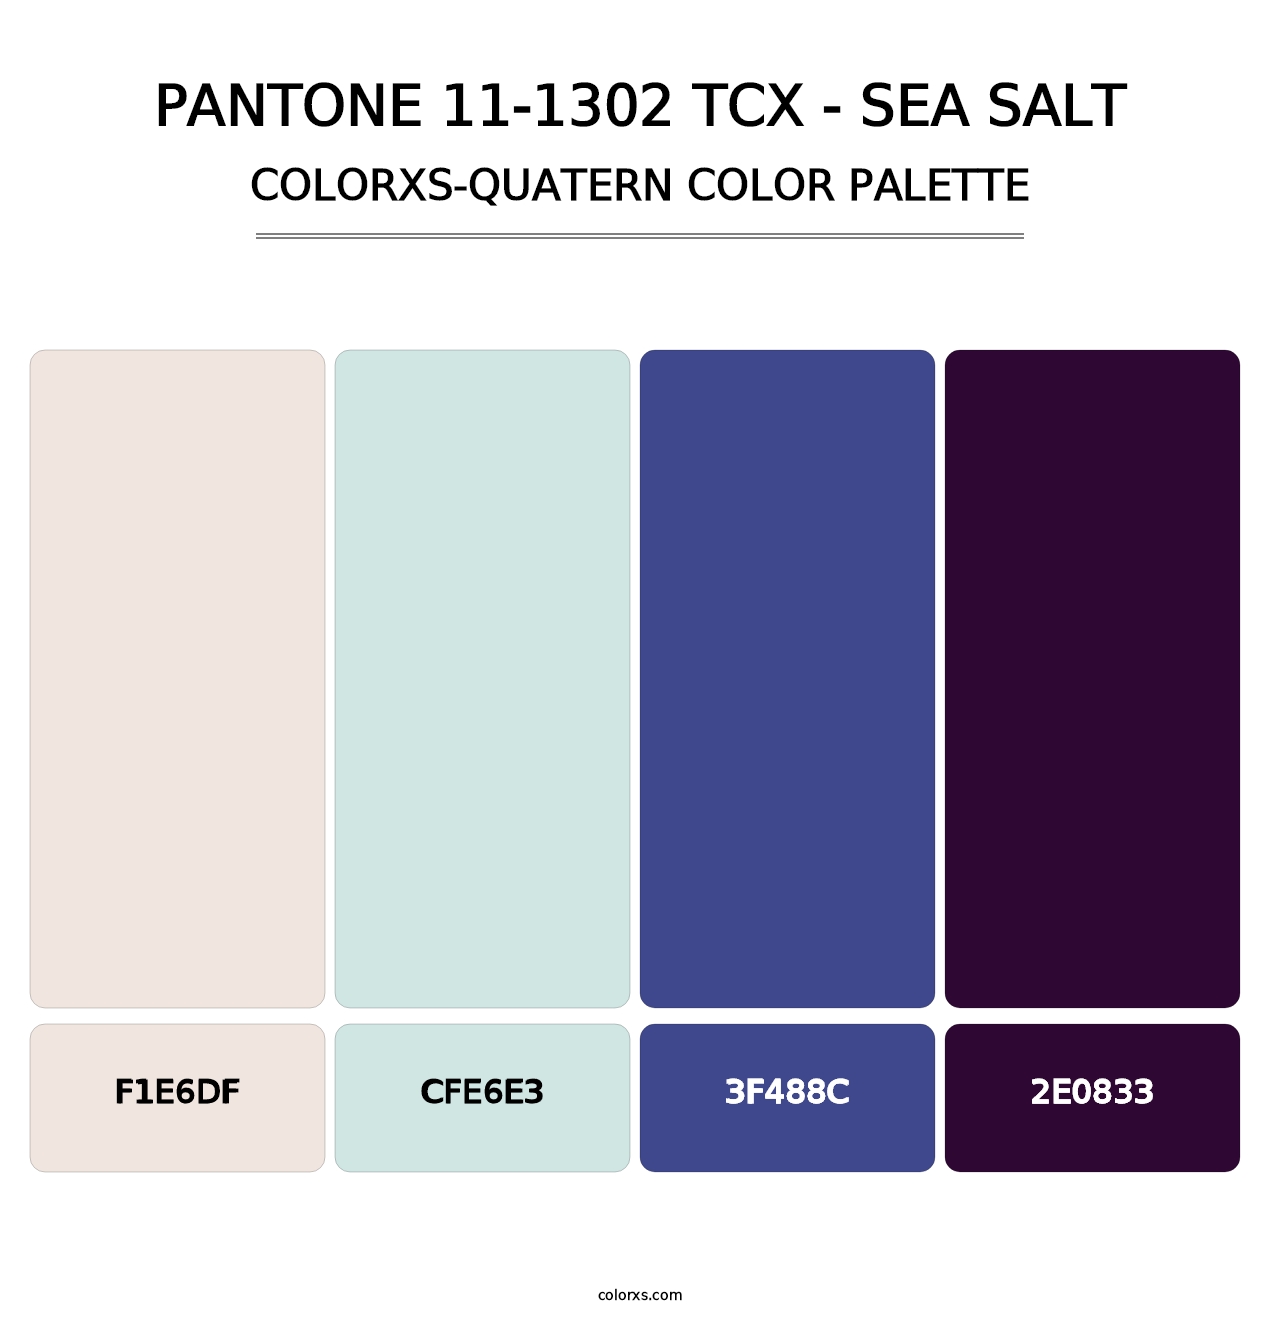 PANTONE 11-1302 TCX - Sea Salt - Colorxs Quatern Palette